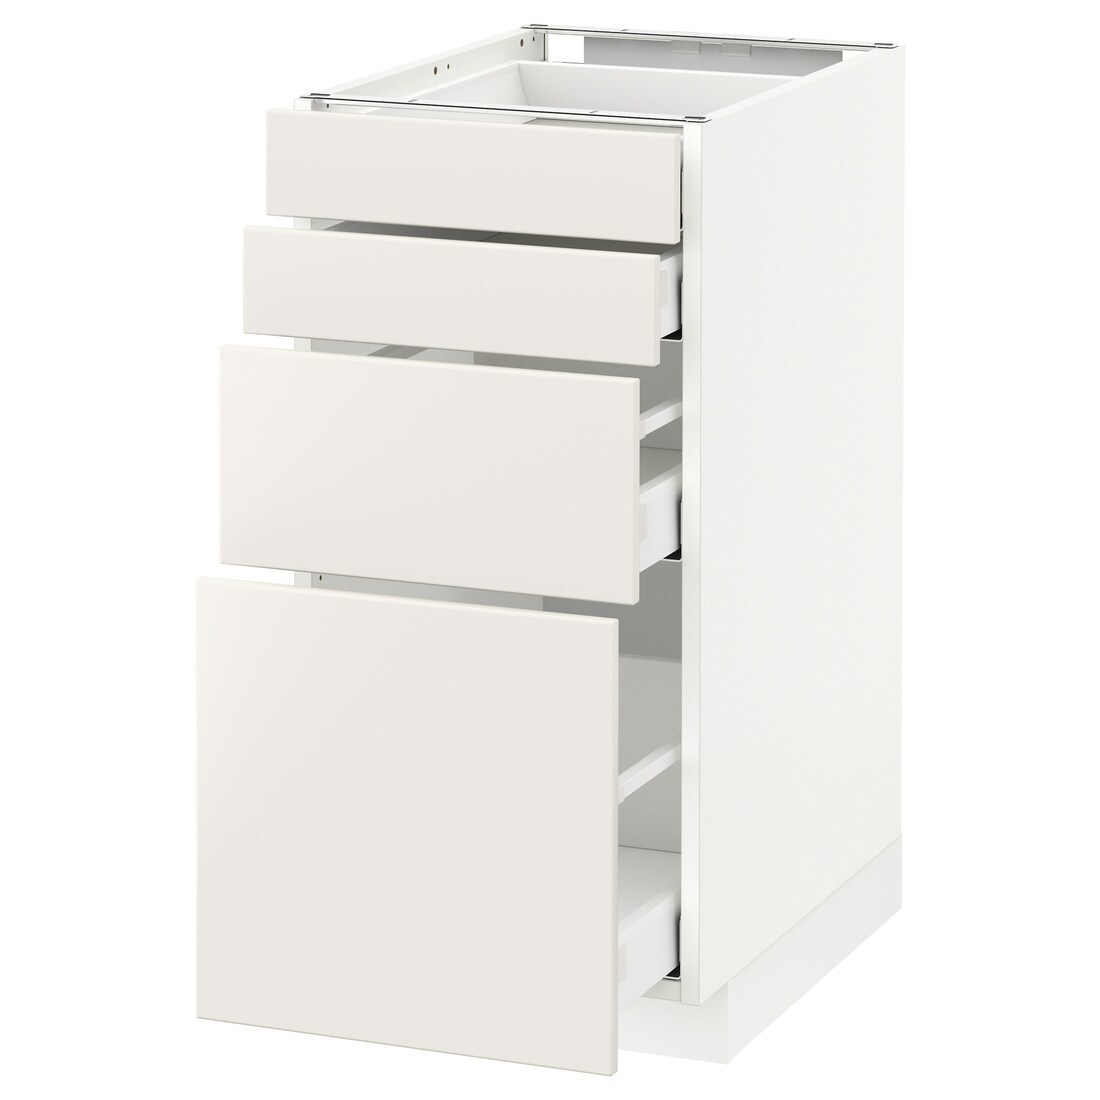 IKEA METOD МЕТОД / MAXIMERA МАКСИМЕРА Напольный шкаф с ящиками, белый / Veddinge белый, 40x60 см 69049867 690.498.67